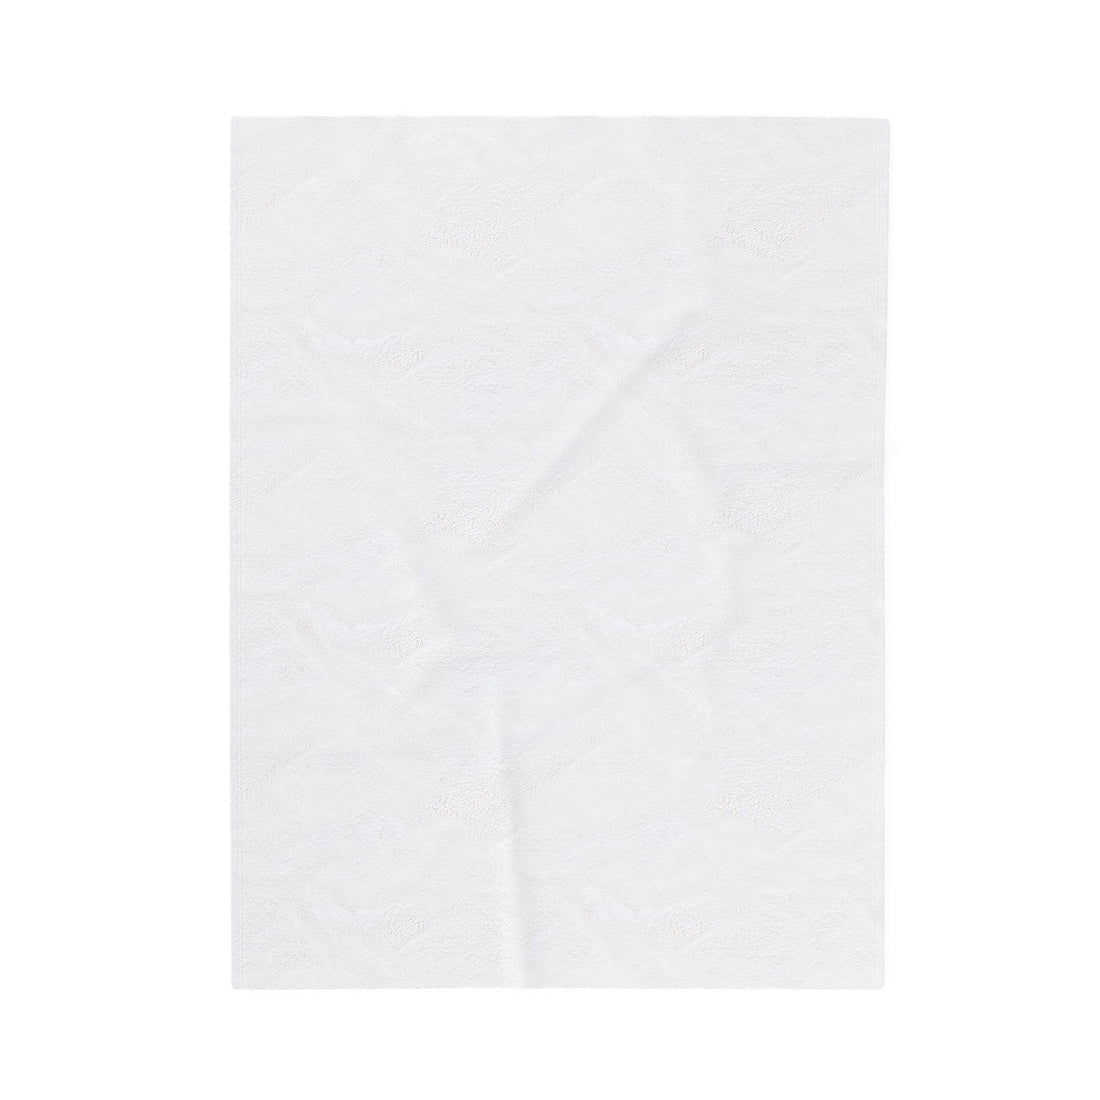 Tic Tac Love Velveteen Plush Blanket - All Over Prints - Positively Sassy - Tic Tac Love Velveteen Plush Blanket